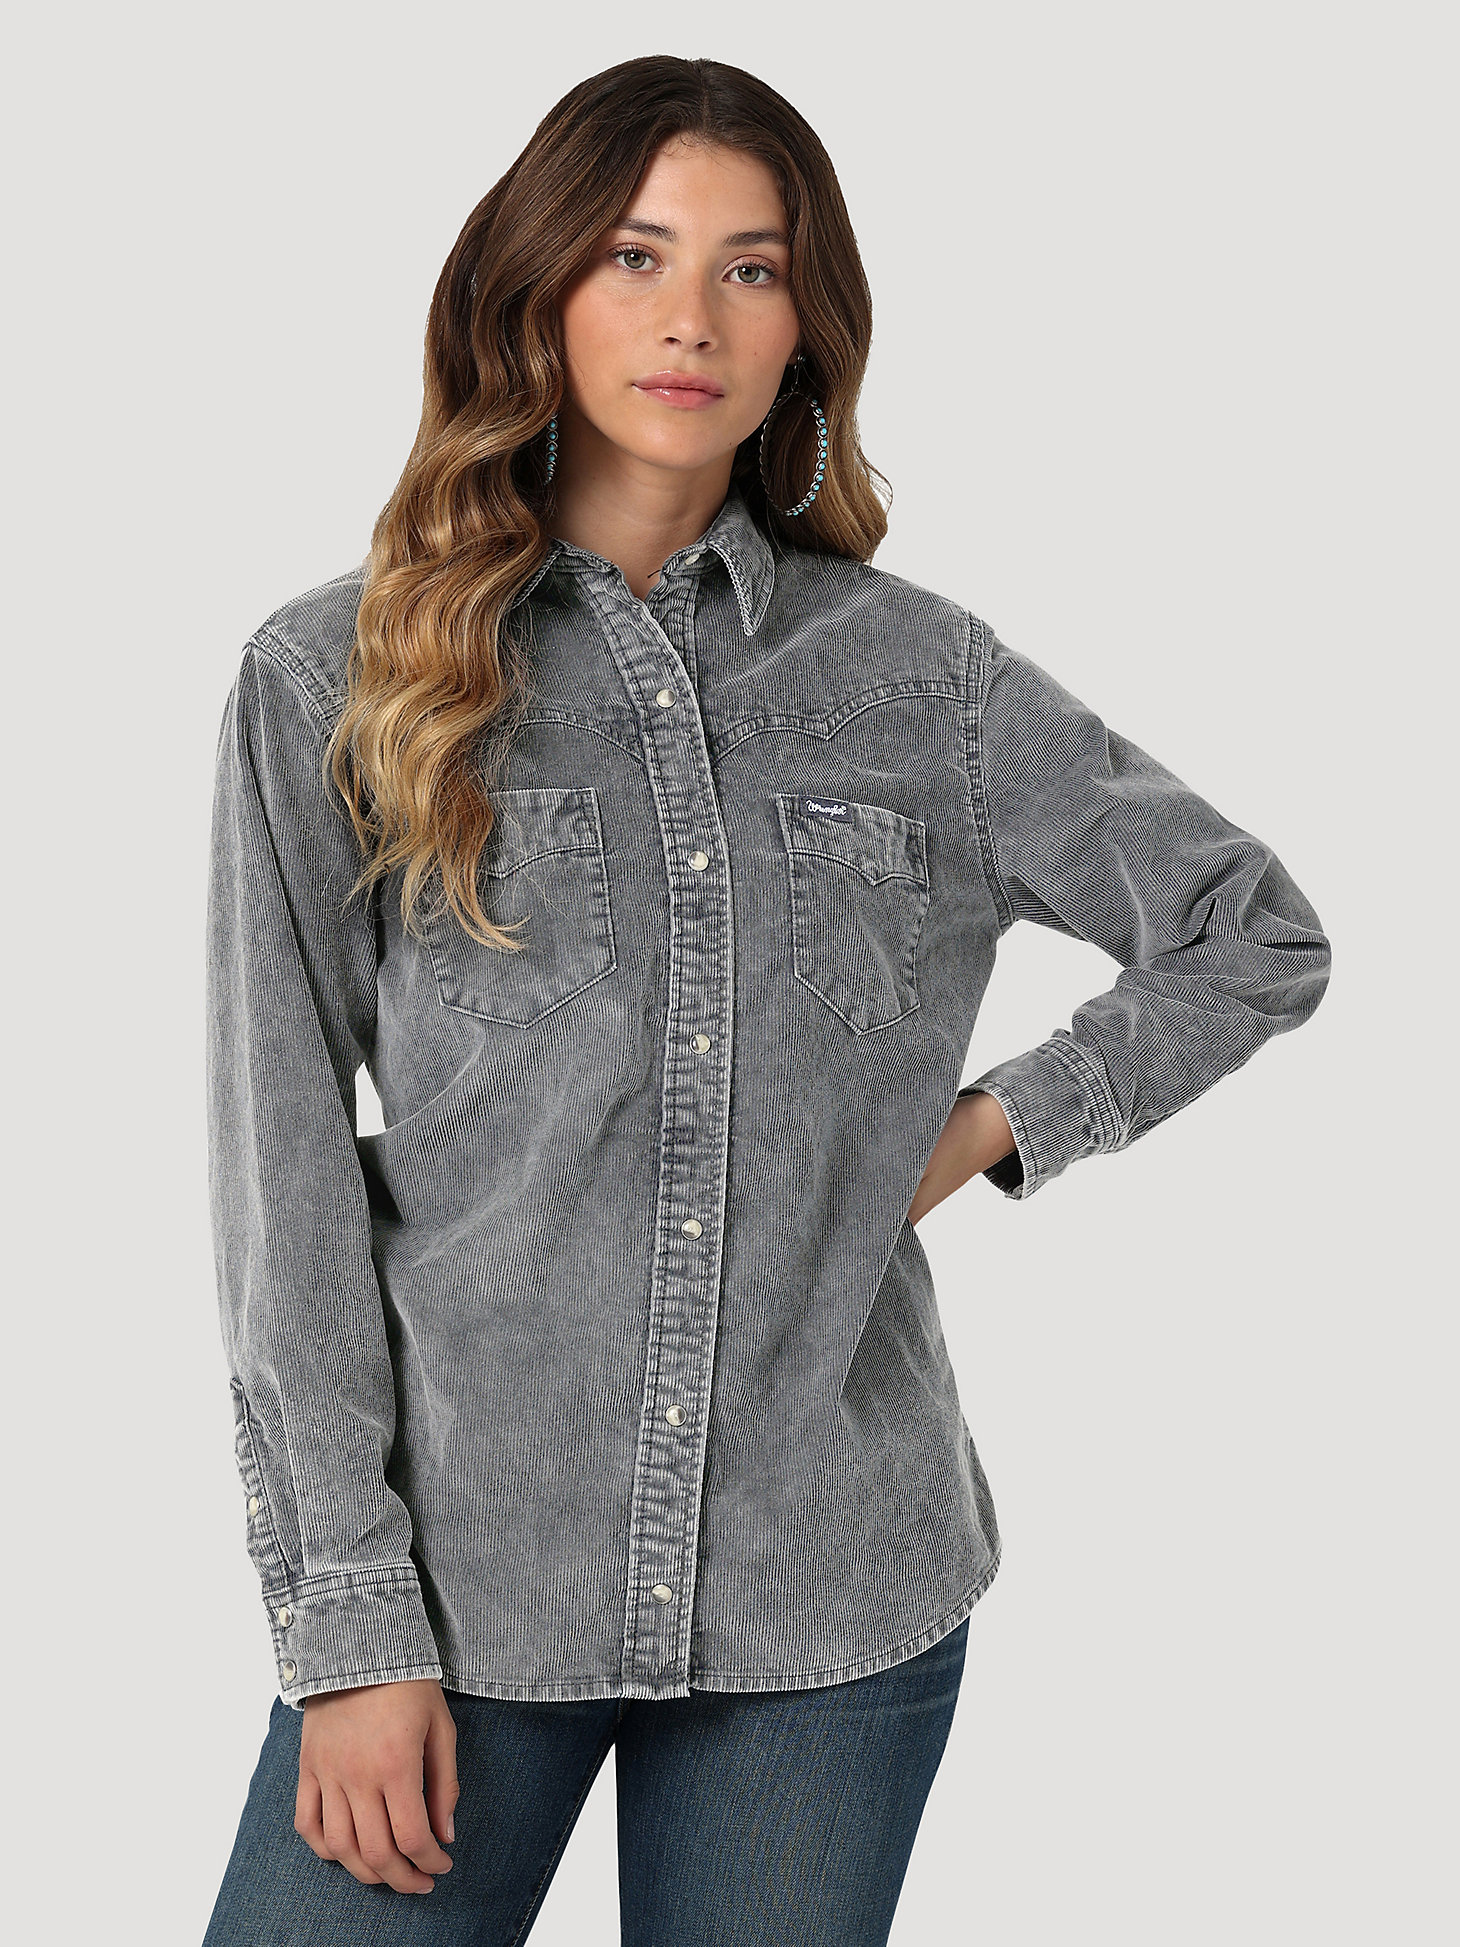 Women's Wrangler Corduroy Fade Western Snap Shirt in Grey main view